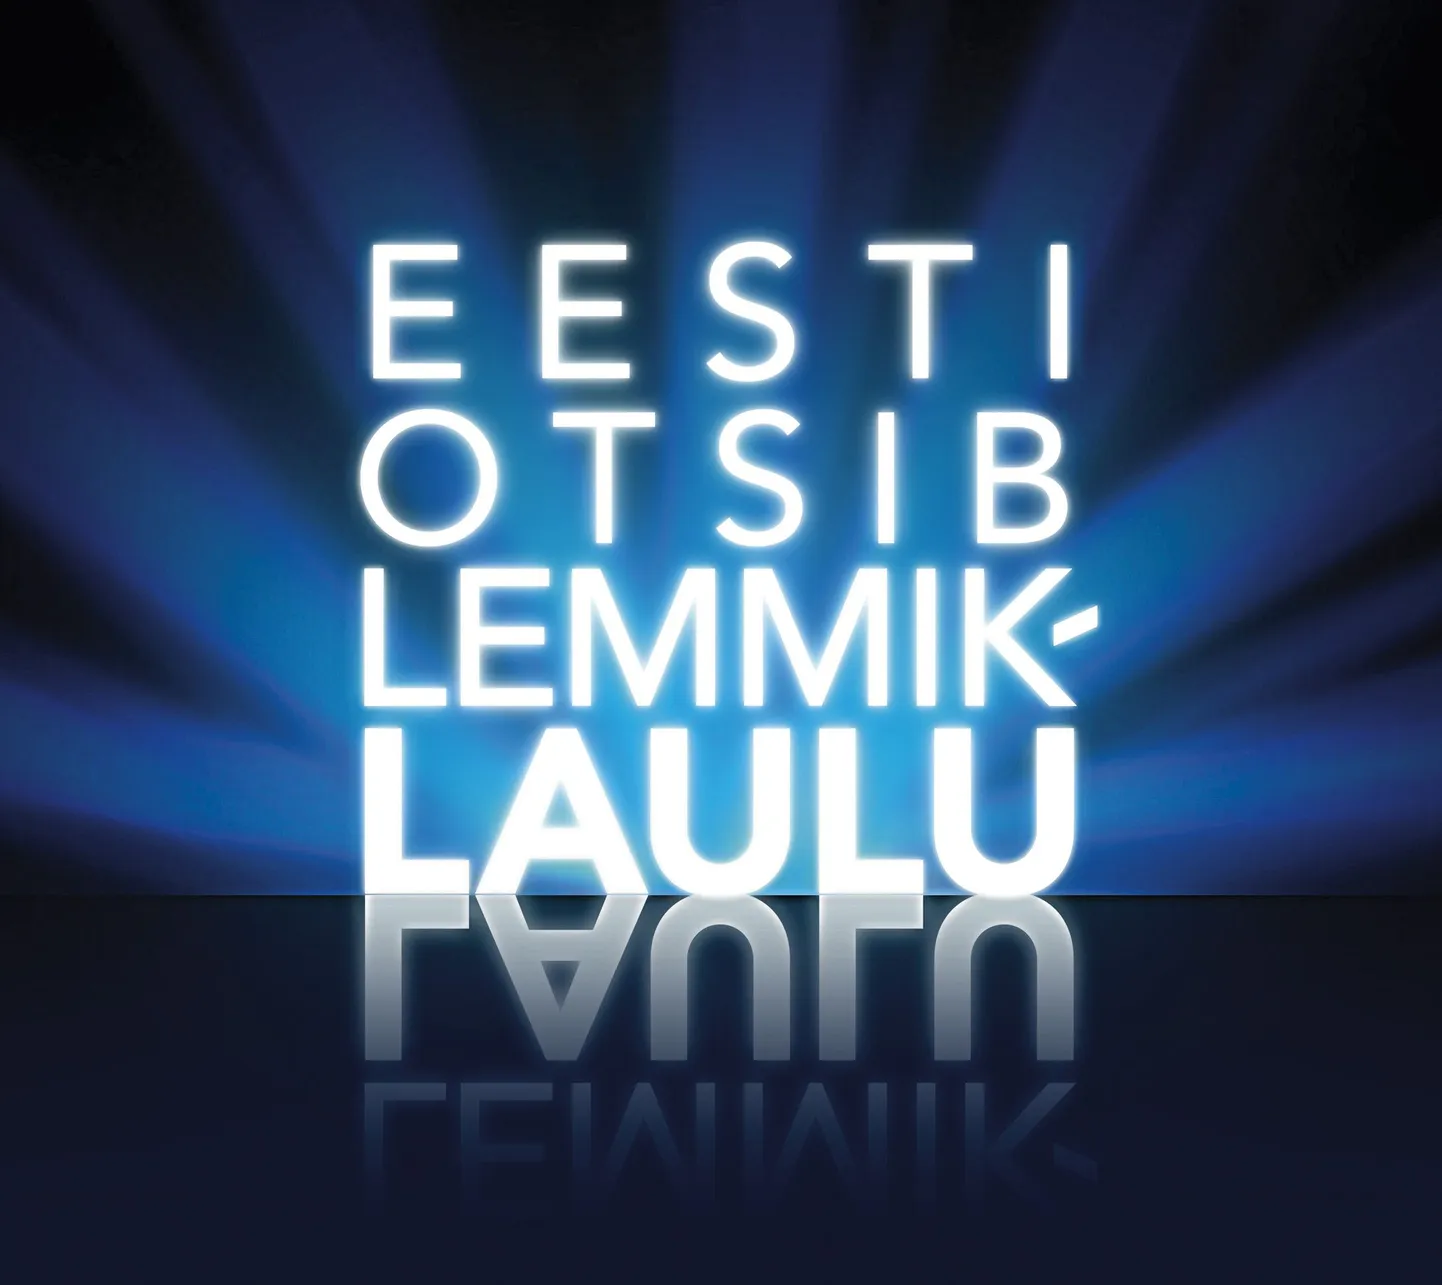 «Eesti otsib lemmiklaulu»